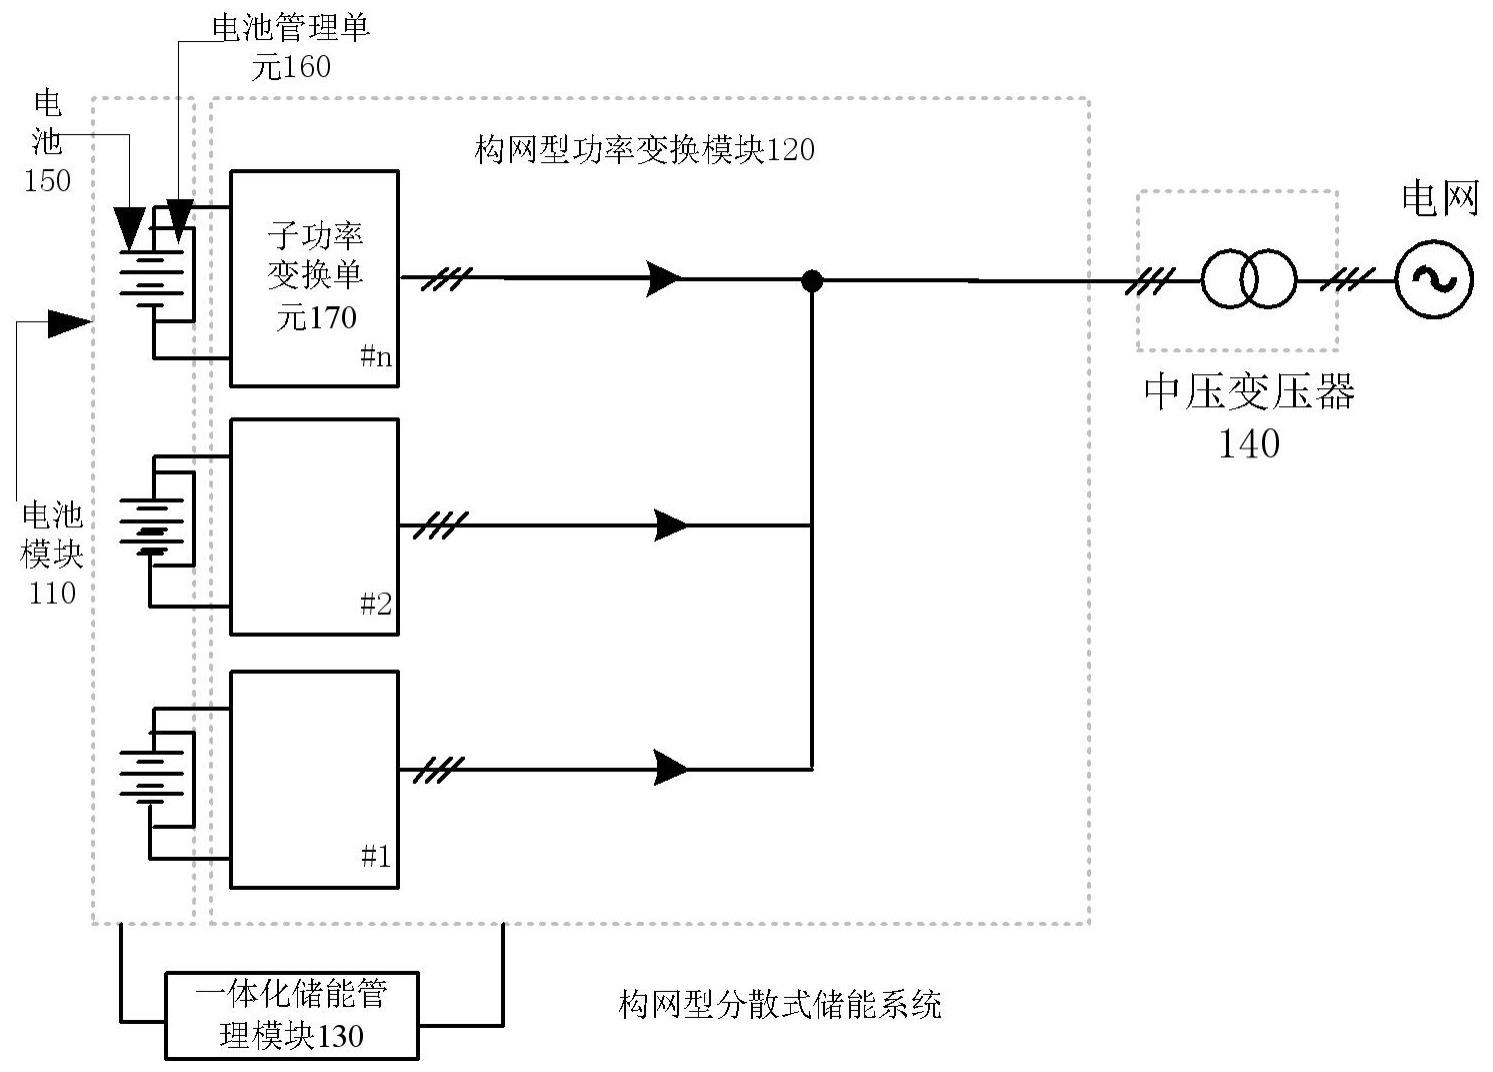 构网型分散式储能系统的制作方法